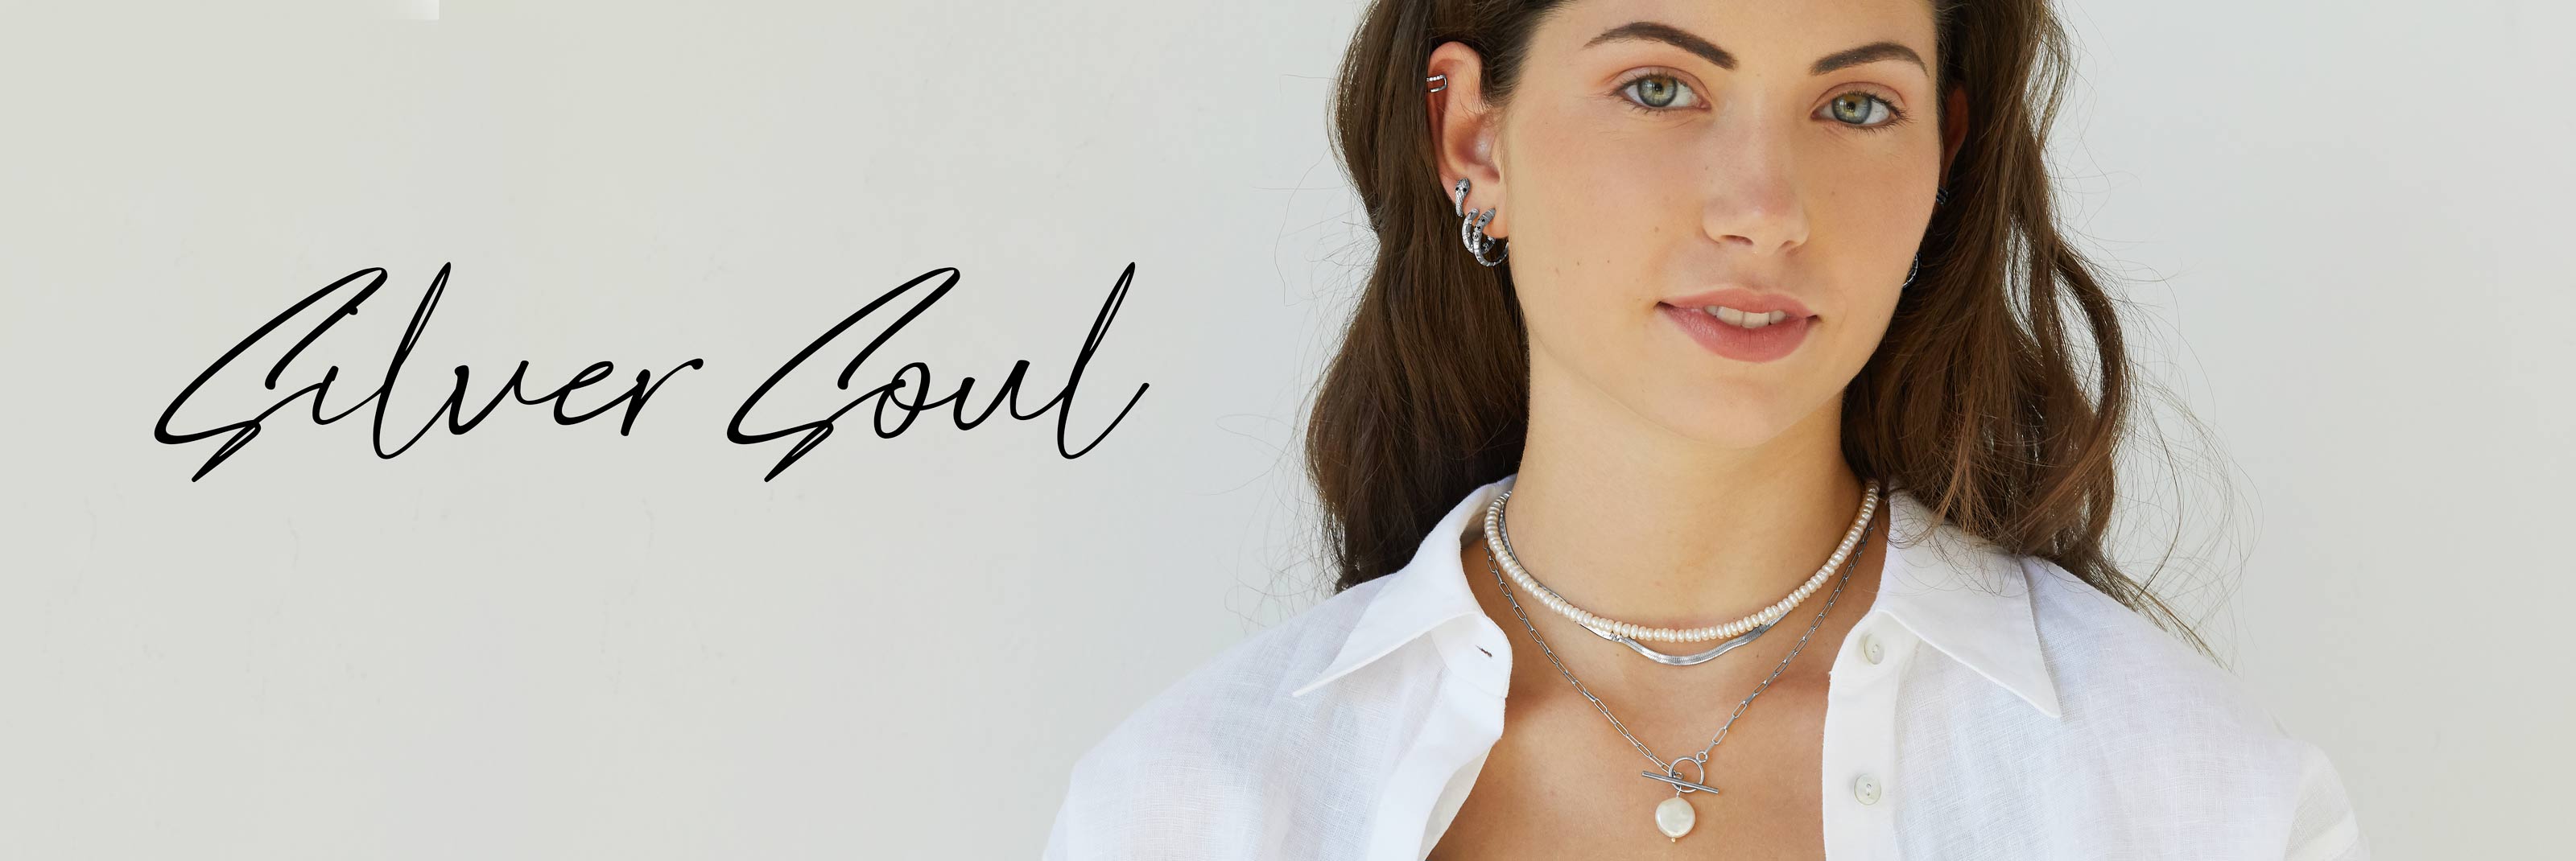 Silver Soul - Necklaces